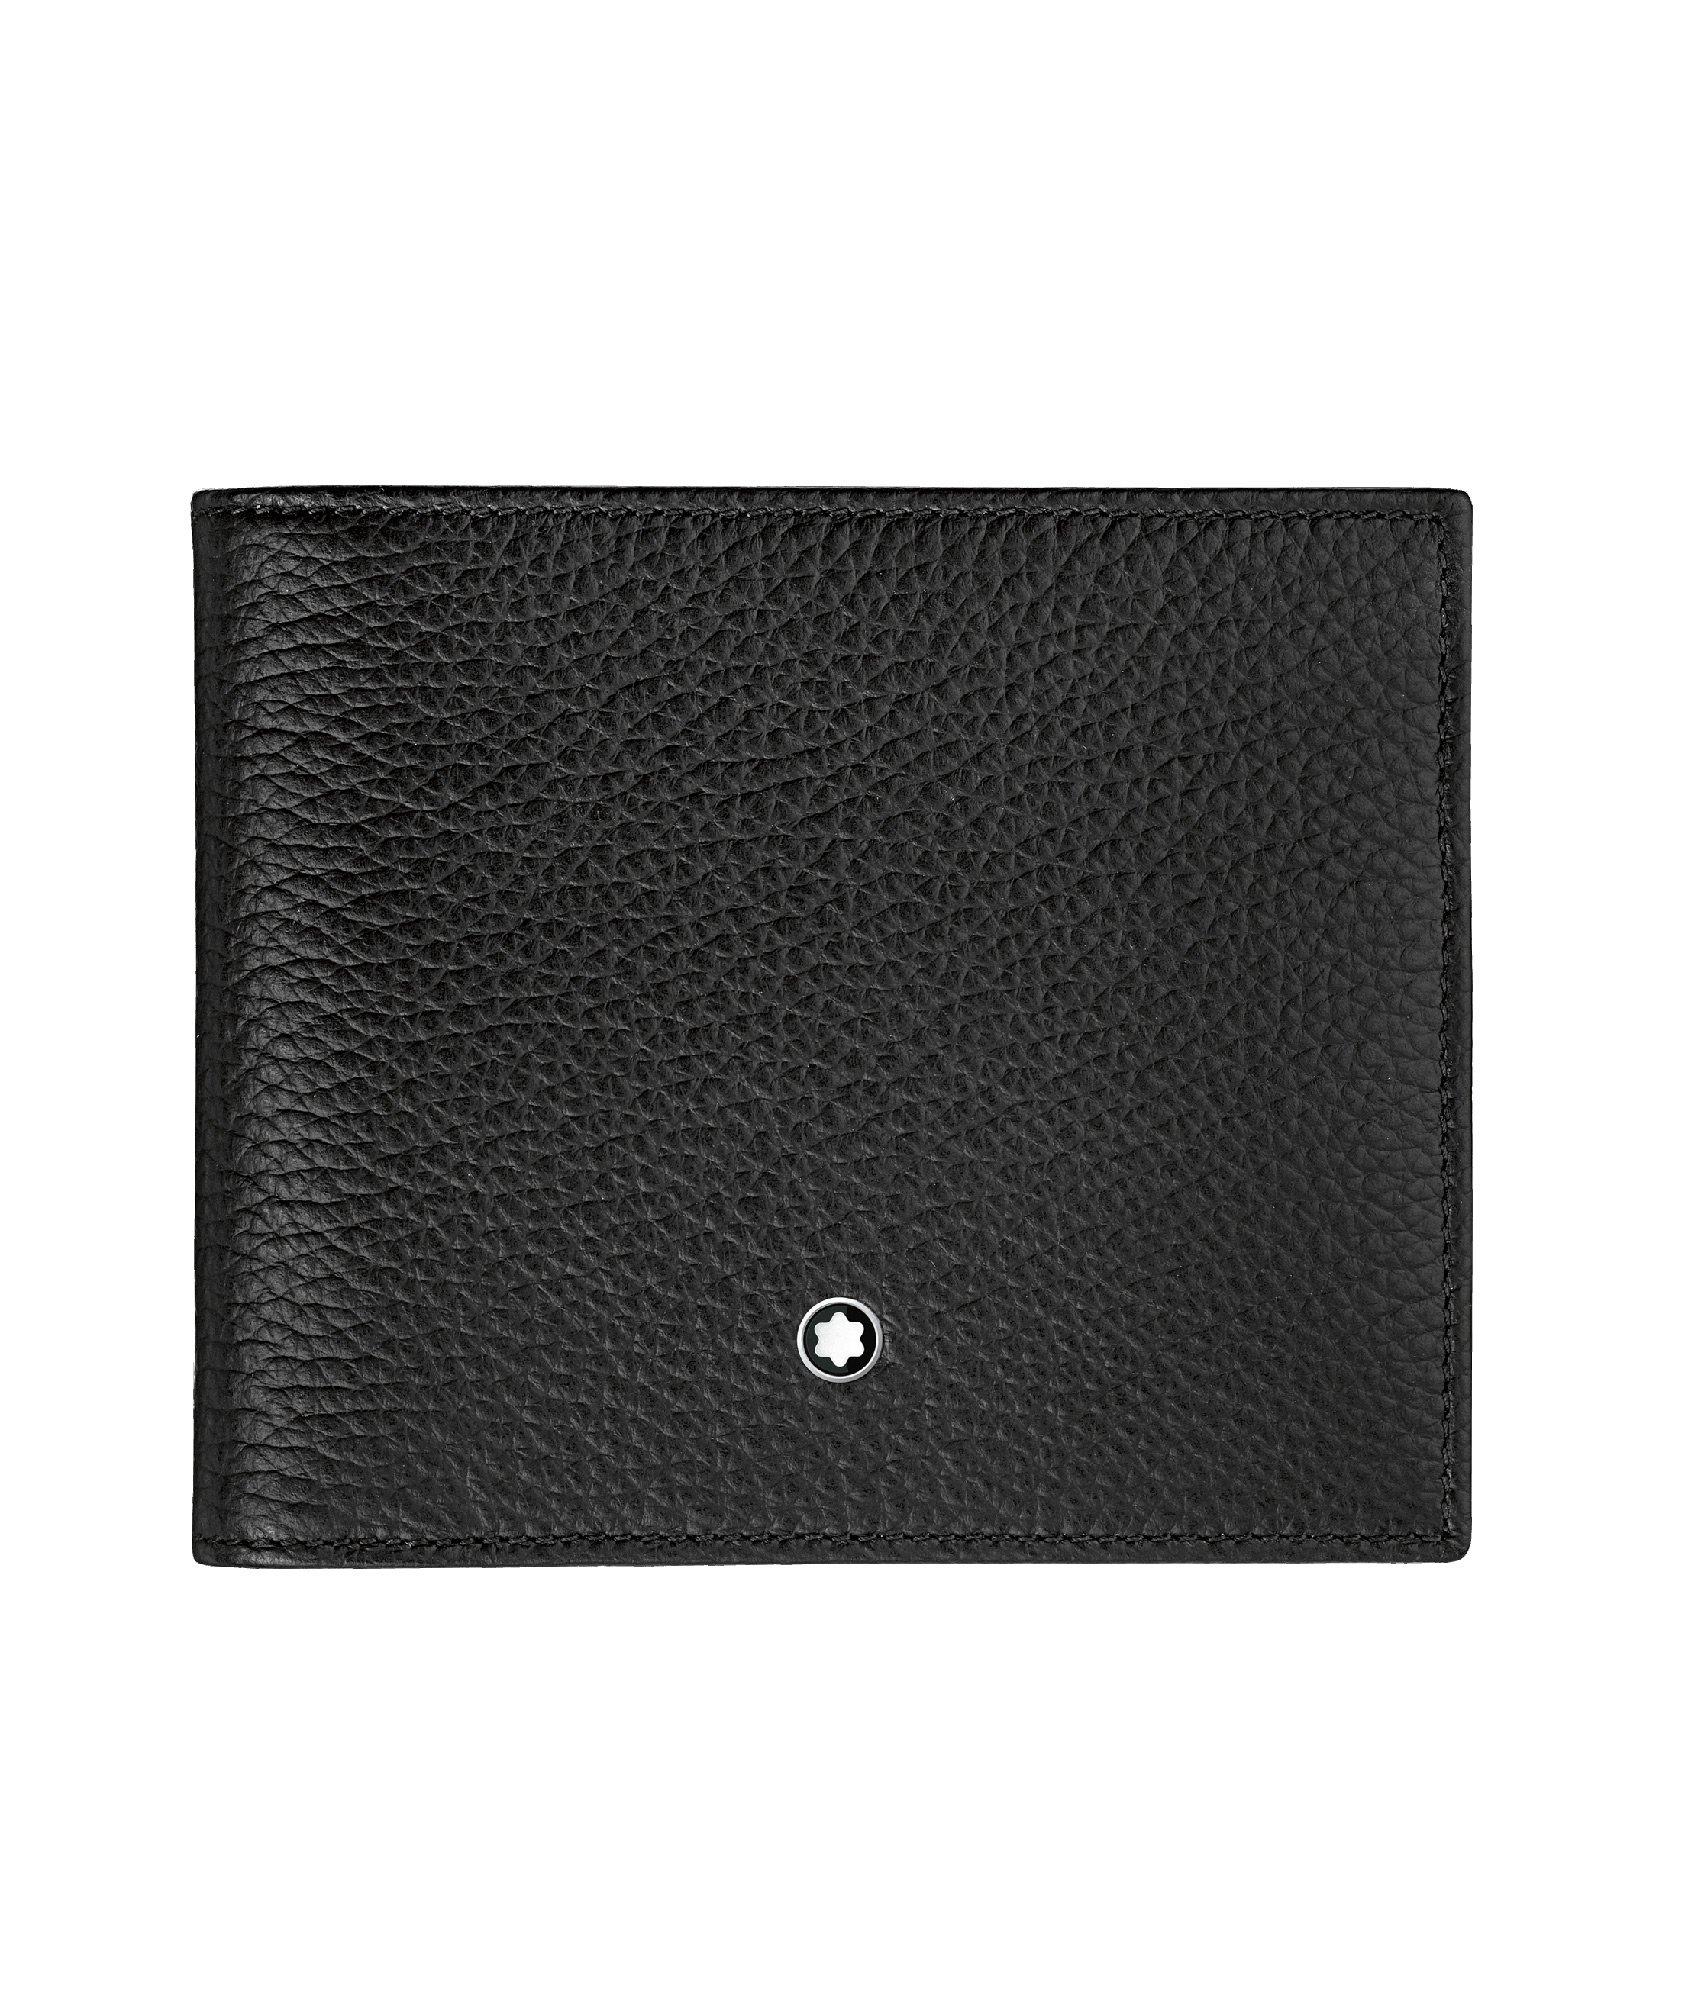 Meisterstück Leather Wallet image 0